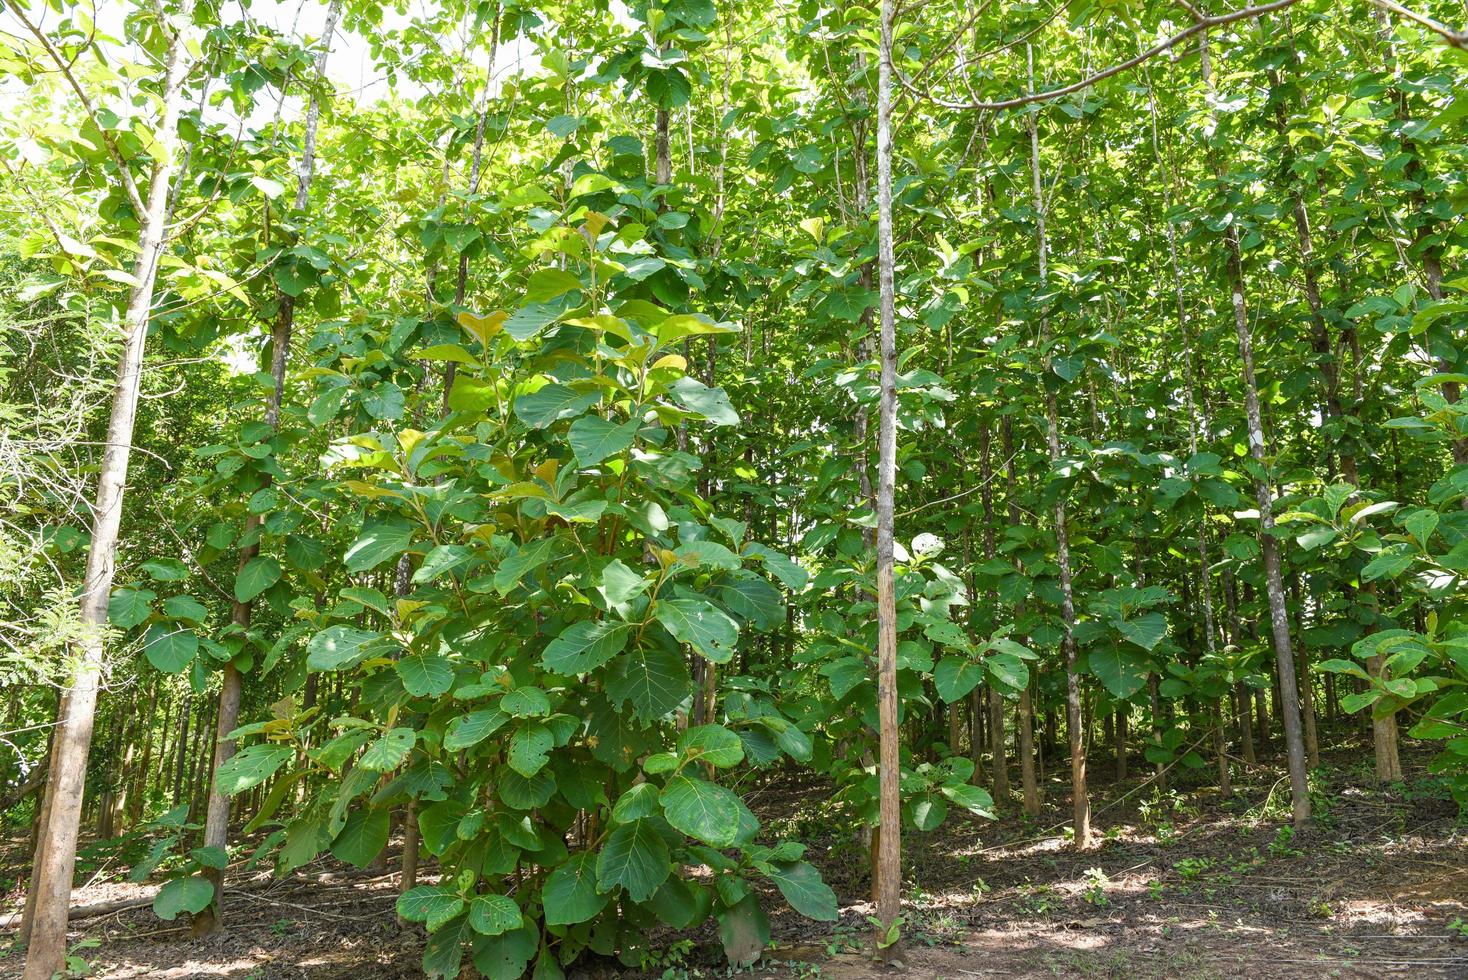 arbre de teck agricole en plantation plante de champ de teck avec feuille verte - forêt de soleils d'arbres à feuilles caduques vertes fraîches encadrées de feuilles avec les rayons chauds du soleil à travers le feuillage photo